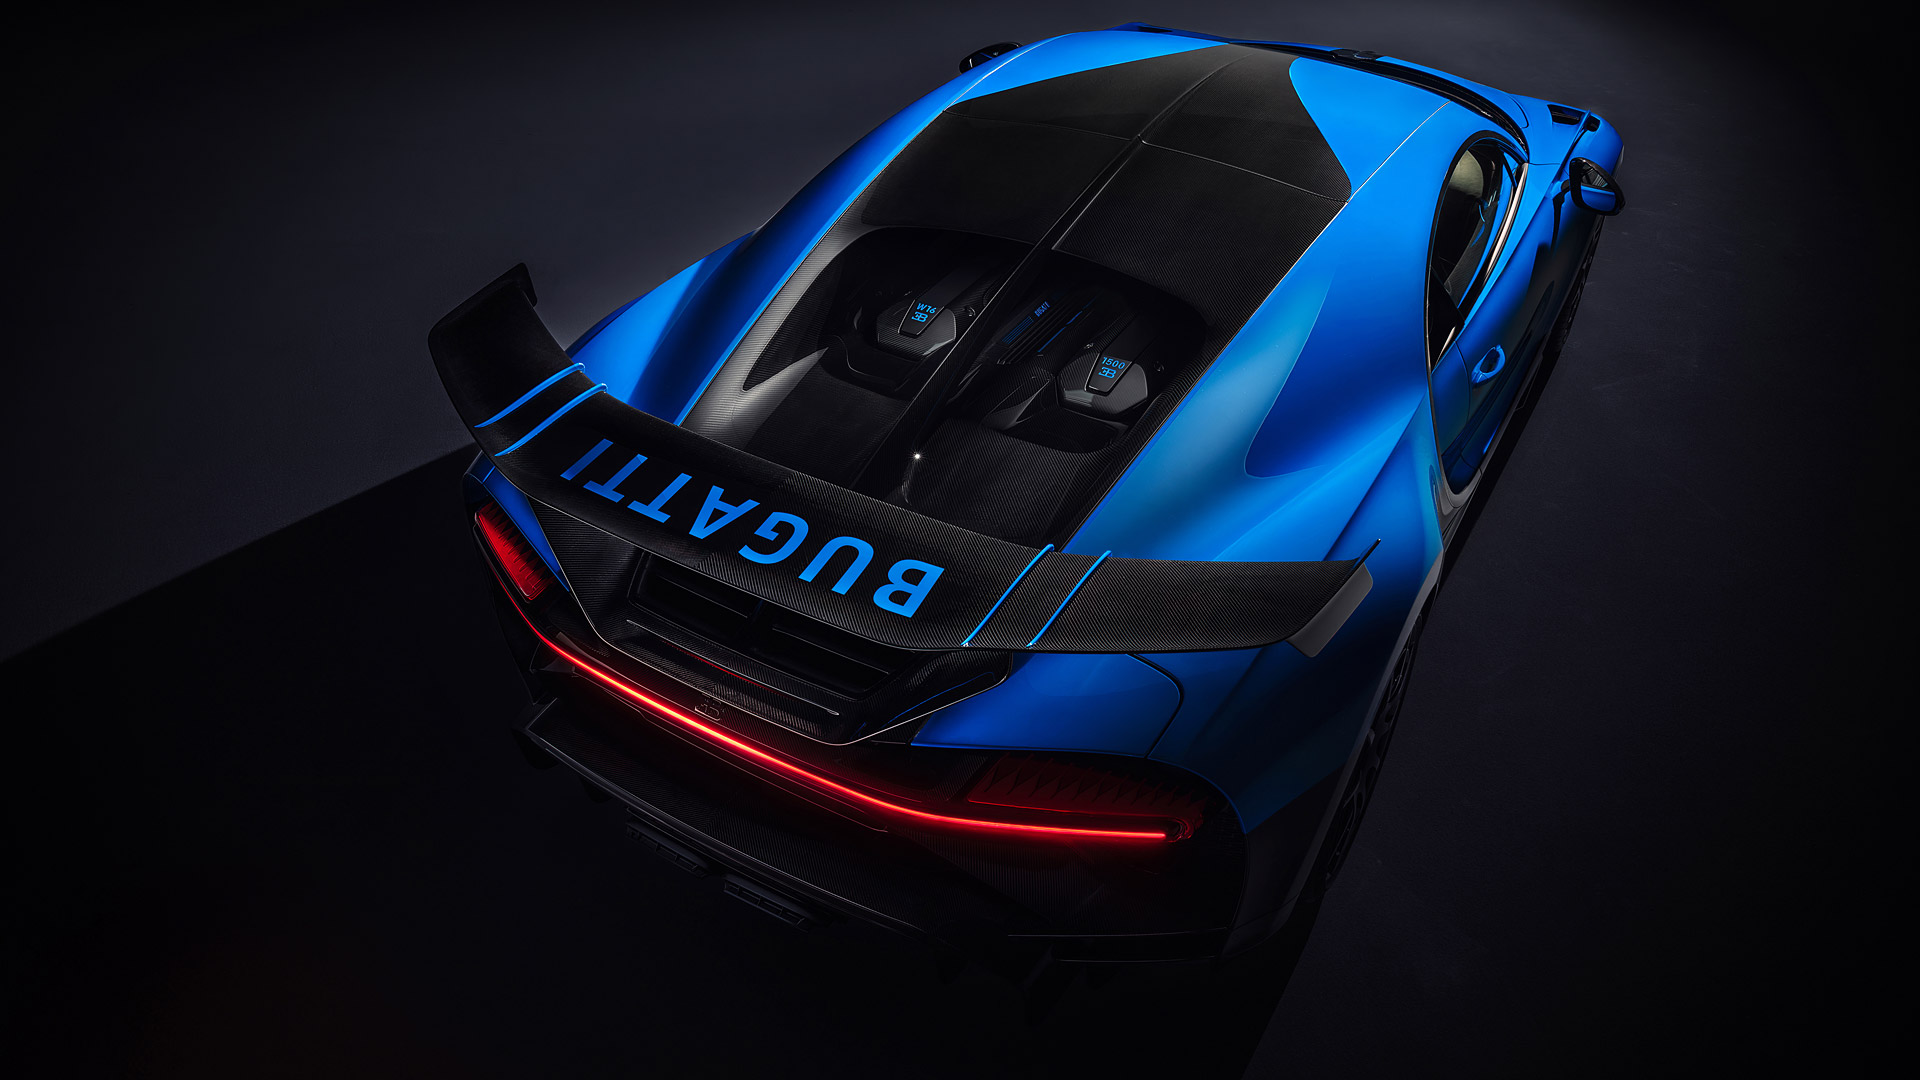  2021 Bugatti Chiron Pur Sport Wallpaper.